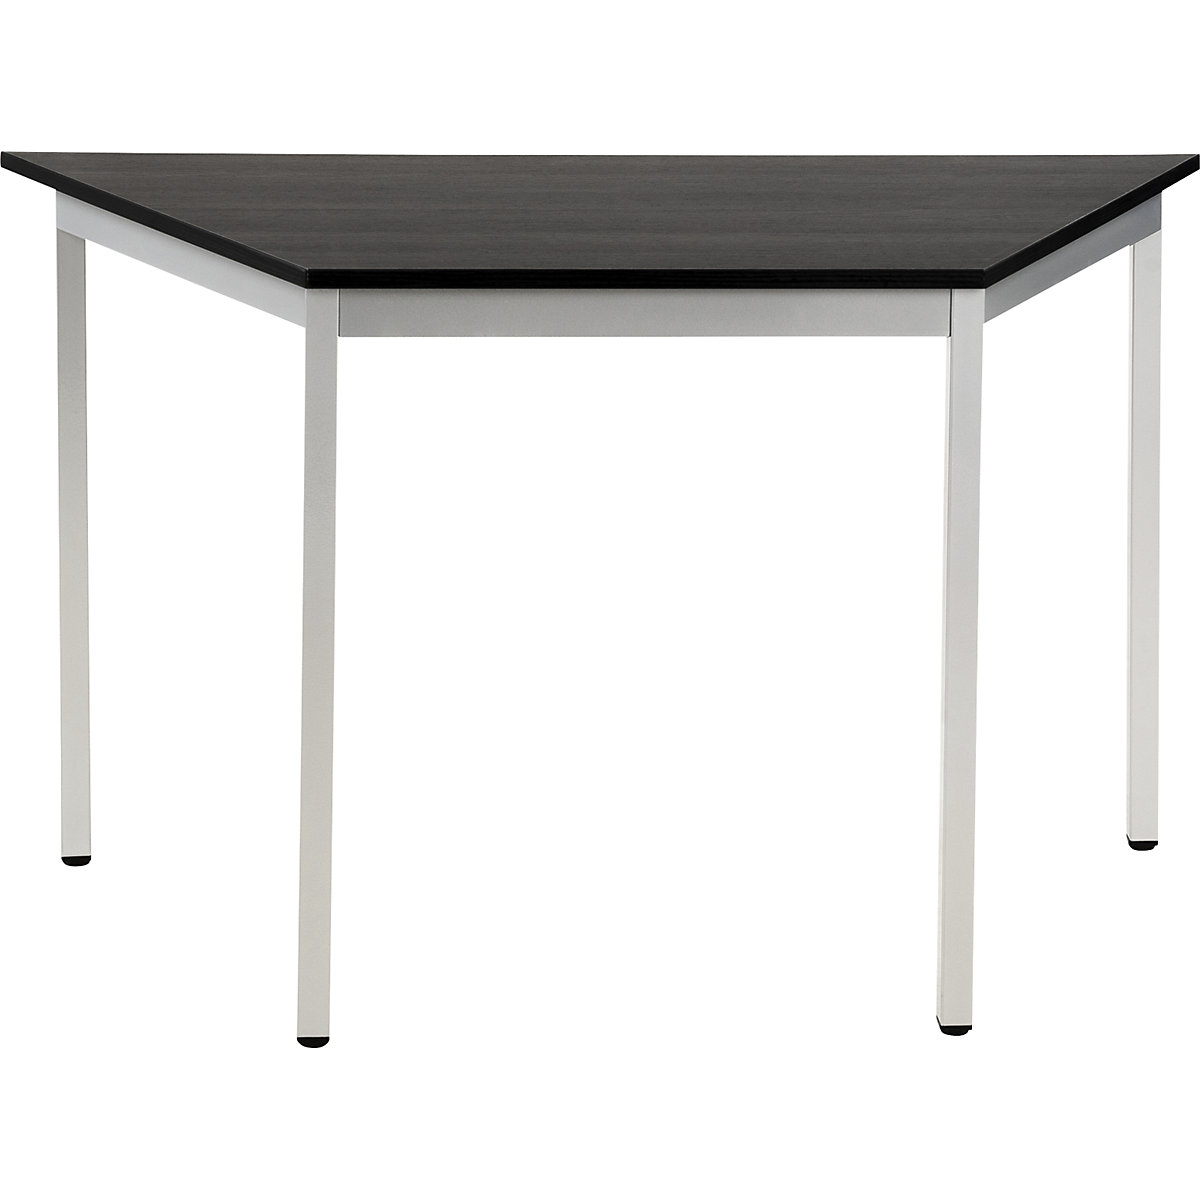 Višenamjenski stol – eurokraft basic, u obliku trapeza, VxŠxD 740 x 1200 x 600 mm, ploča u imitaciji jasena u tamnosivoj boji, postolje u aluminij bijeloj boji-17